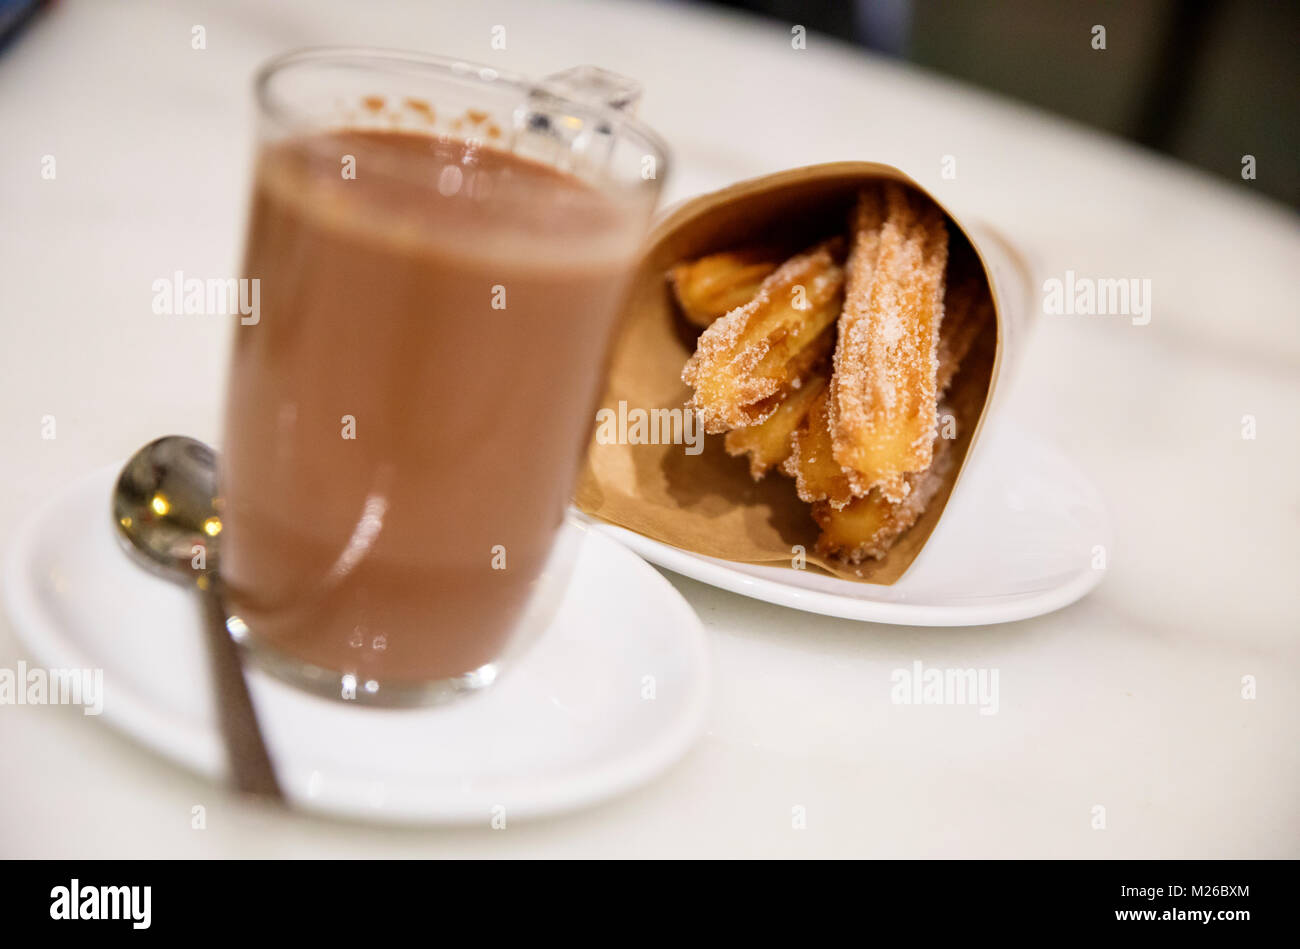 BARCELONA, SPANIEN: Churros und Schokolade sind ein beliebter Nachtisch in ganz Spanien. (Foto von Matt Mai/Alamy) Stockfoto